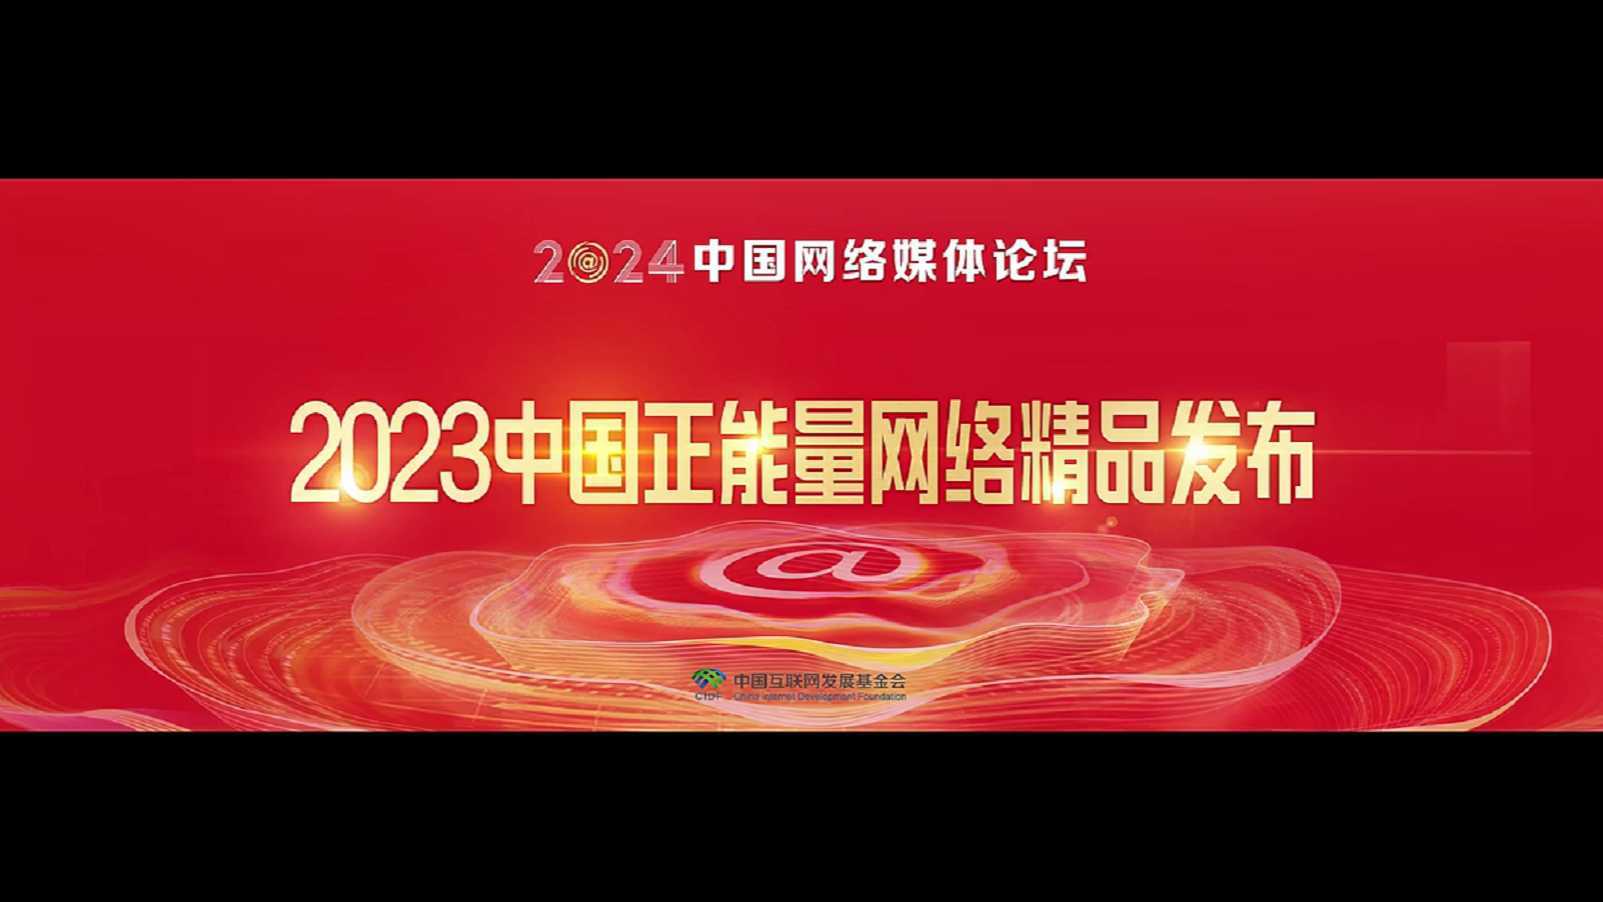 2023中国正能量网络精品发布 | 广告片配音